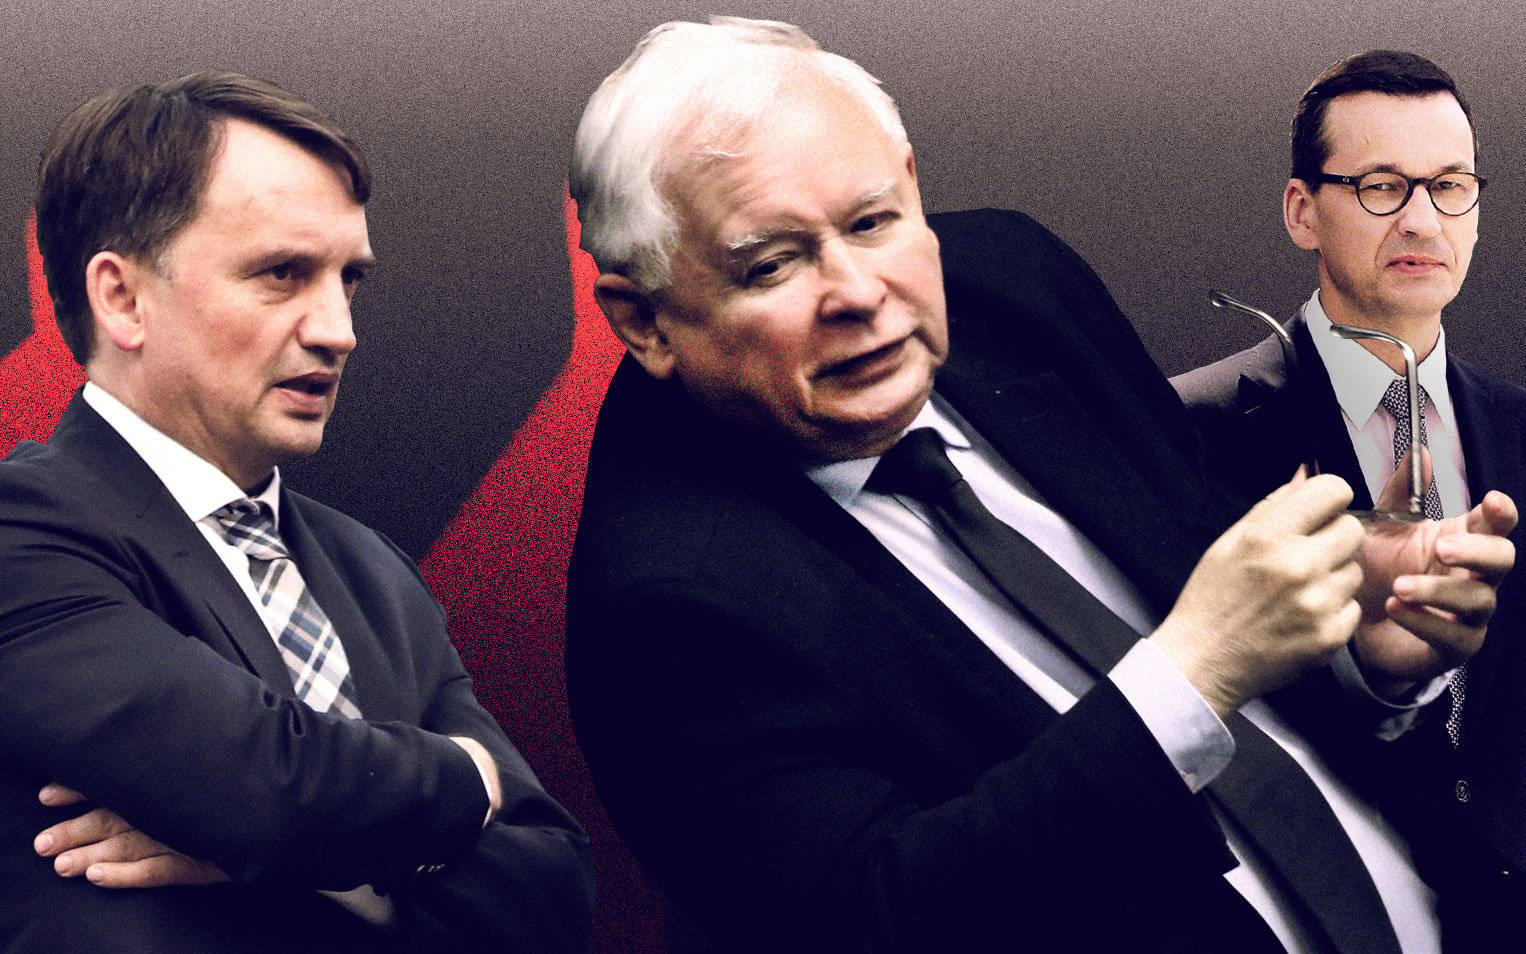 Grafika do artykułu Ujawniamy, o co naprawdę chodzi w konflikcie Ziobro - Kaczyński. Awanturę wywołał Smoleńsk